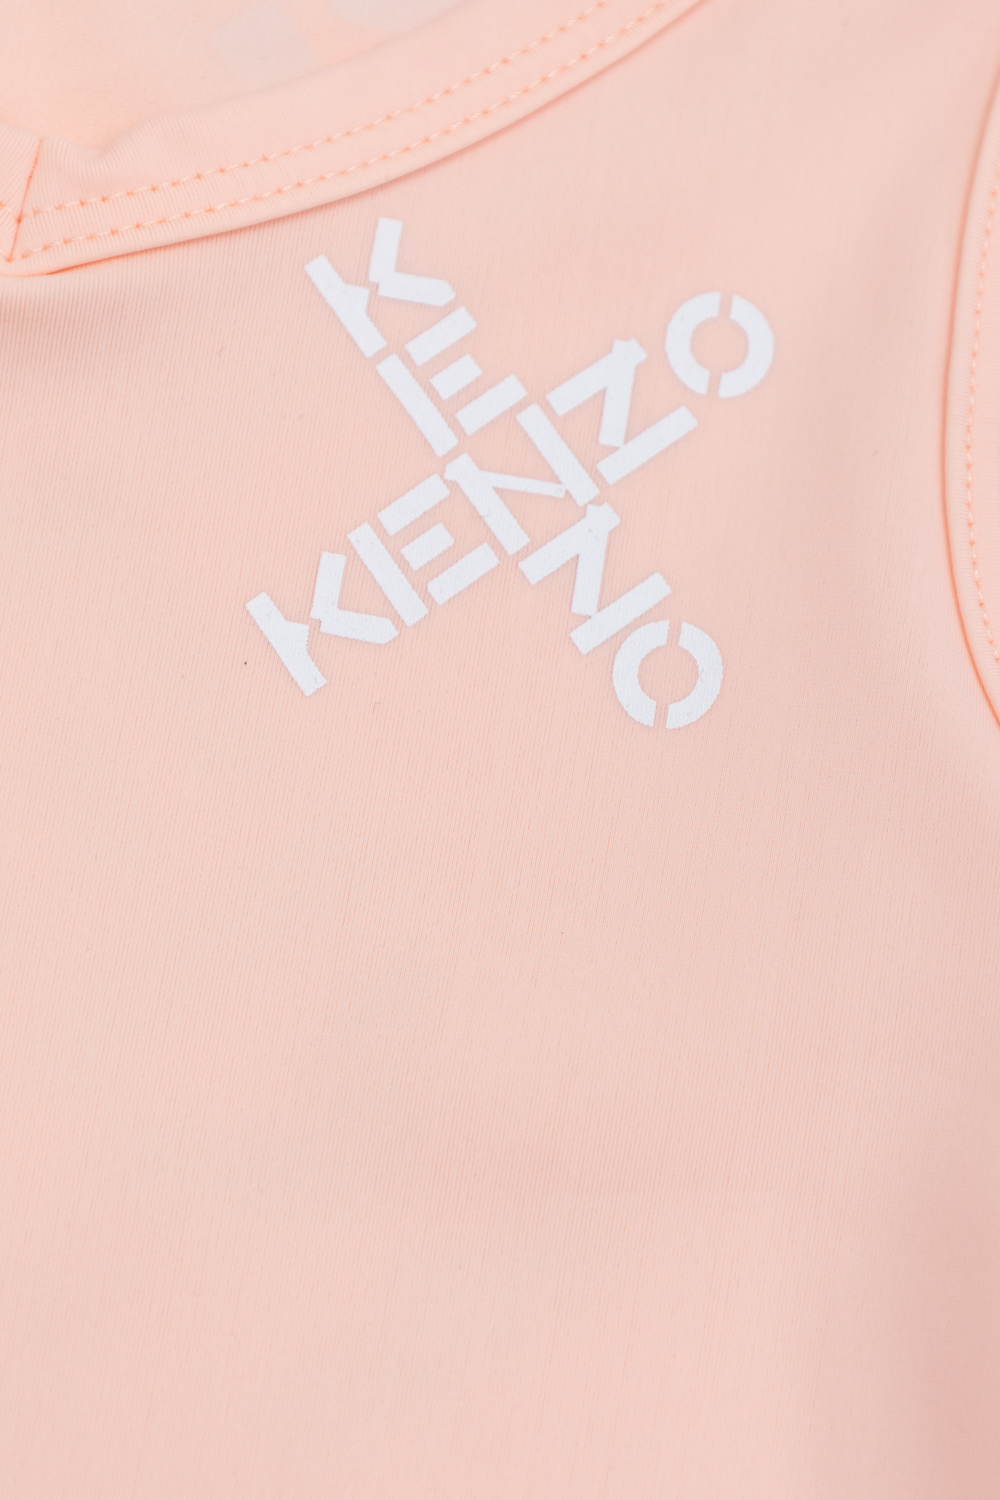 Kenzo Kids for the spring-summer season